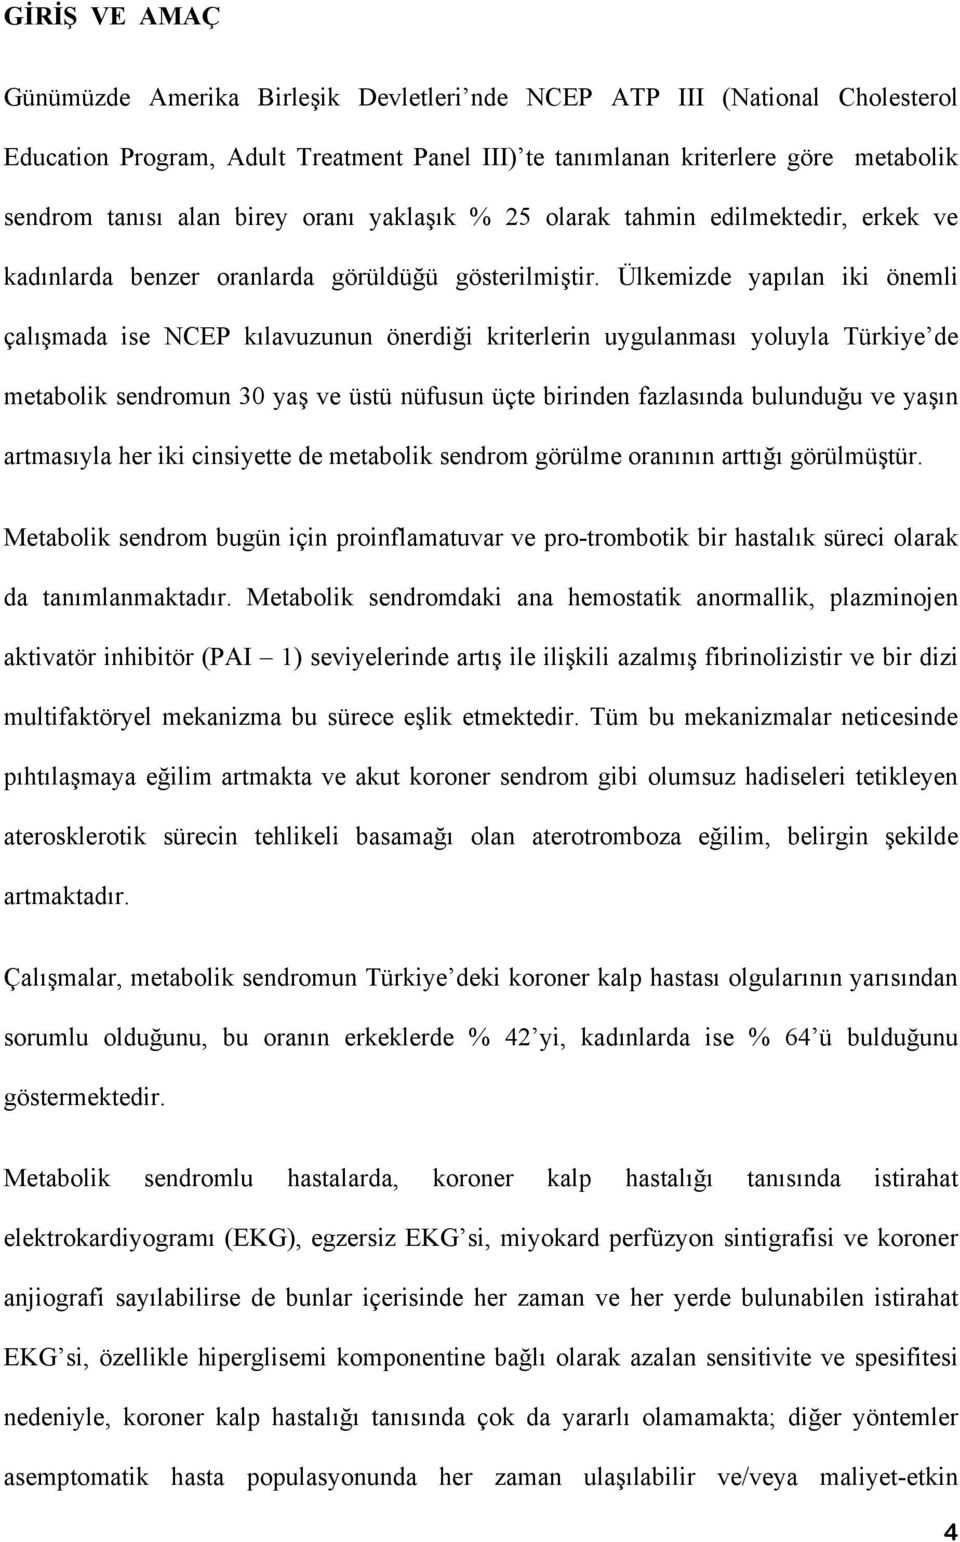 Ülkemizde yapılan iki önemli çalışmada ise NCEP kılavuzunun önerdiği kriterlerin uygulanması yoluyla Türkiye de metabolik sendromun 30 yaş ve üstü nüfusun üçte birinden fazlasında bulunduğu ve yaşın